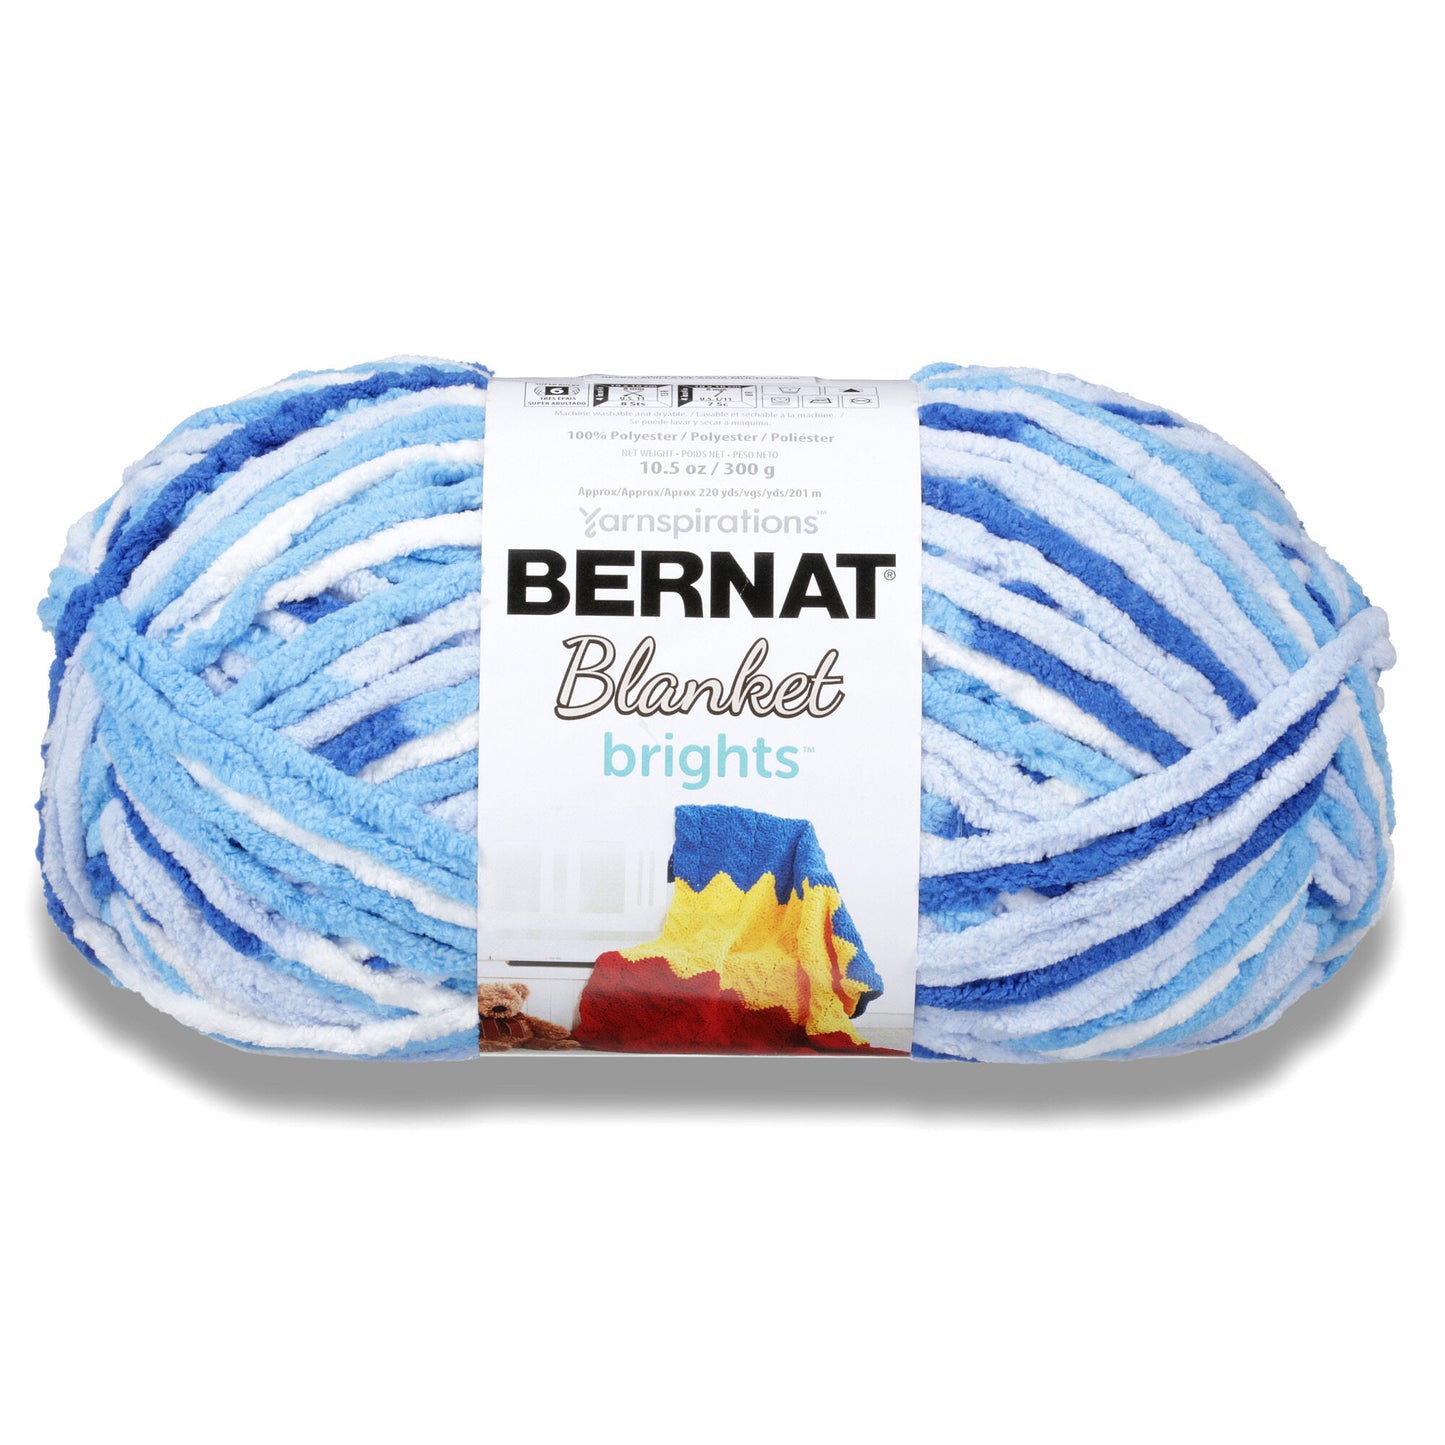 Bernat Blanket